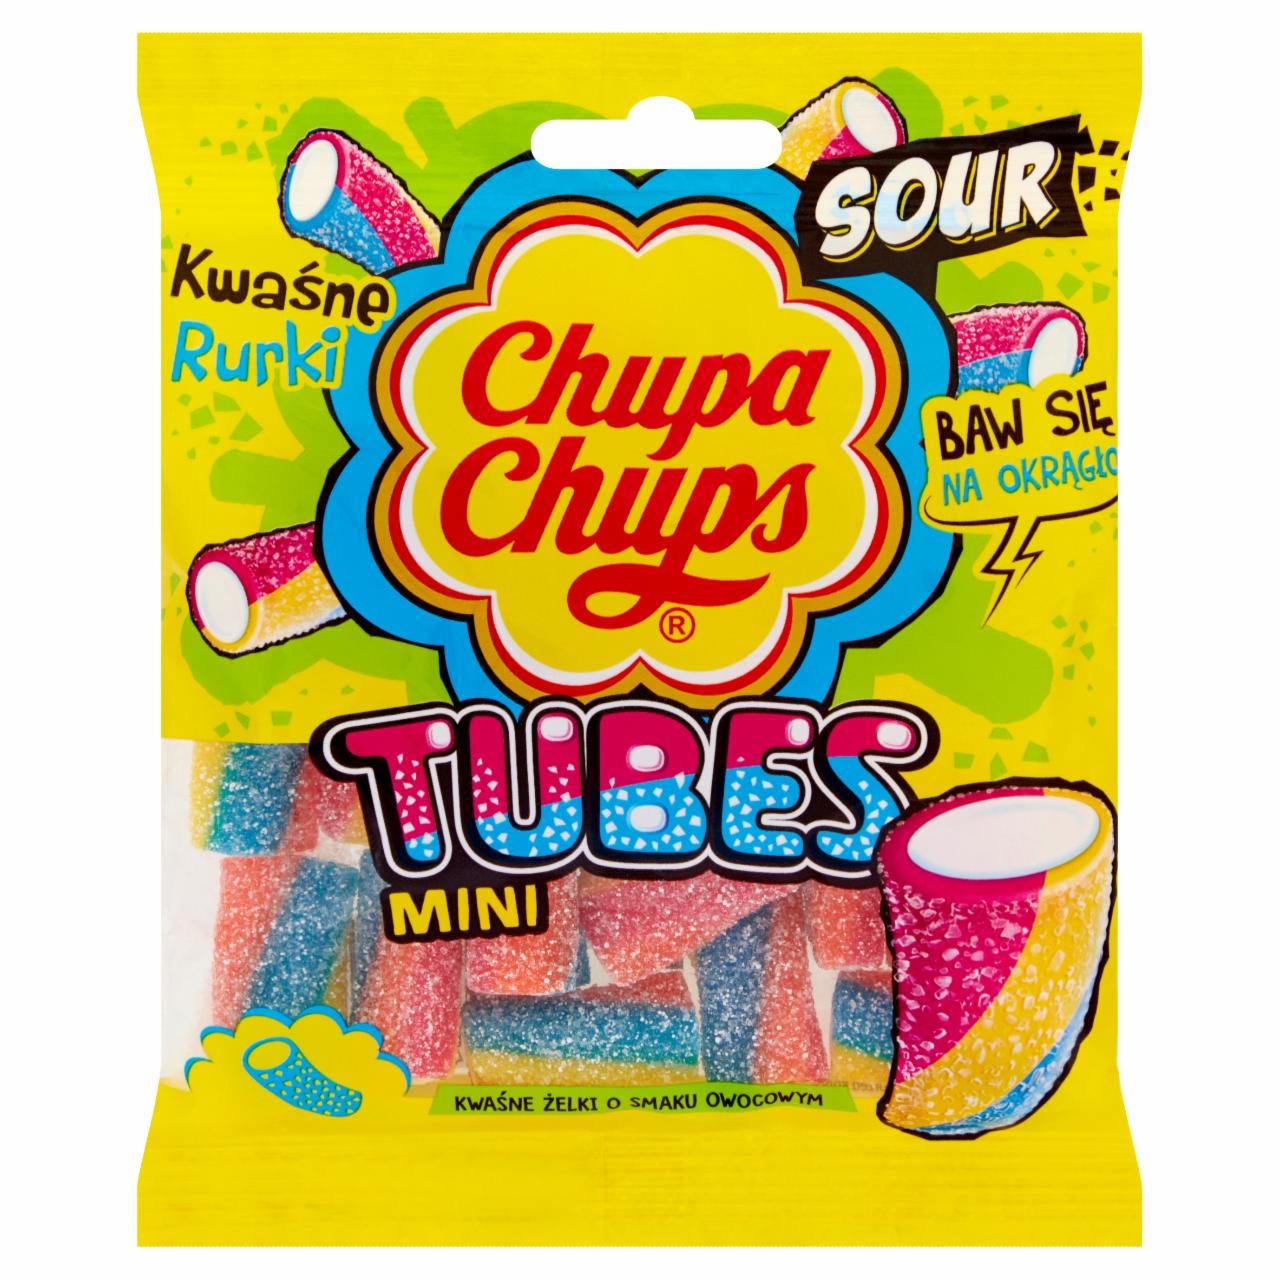 Zdjęcia - Chupa Chups Mini Tubes Kwaśne żelki o smaku owocowym 90 g